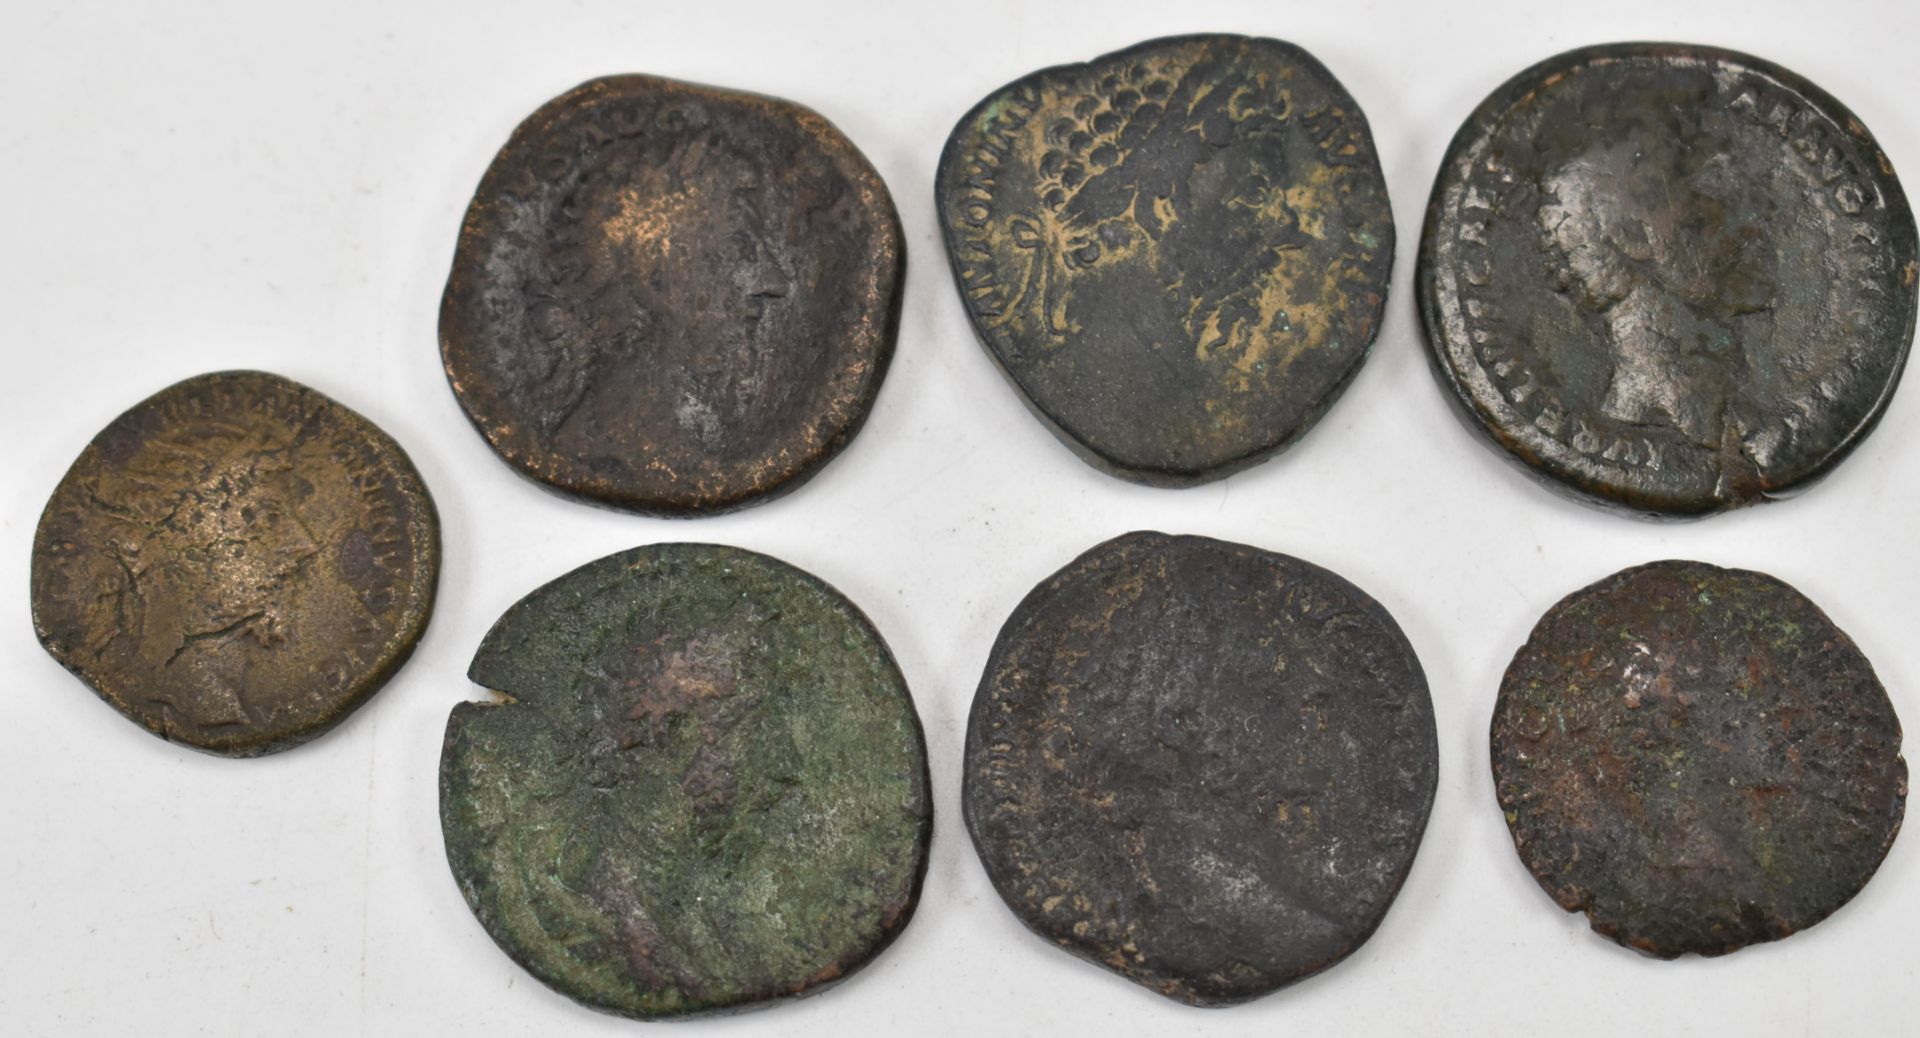 SEVEN ROMAN IMPERIAL COINS FROM MARCUS AURELIUS